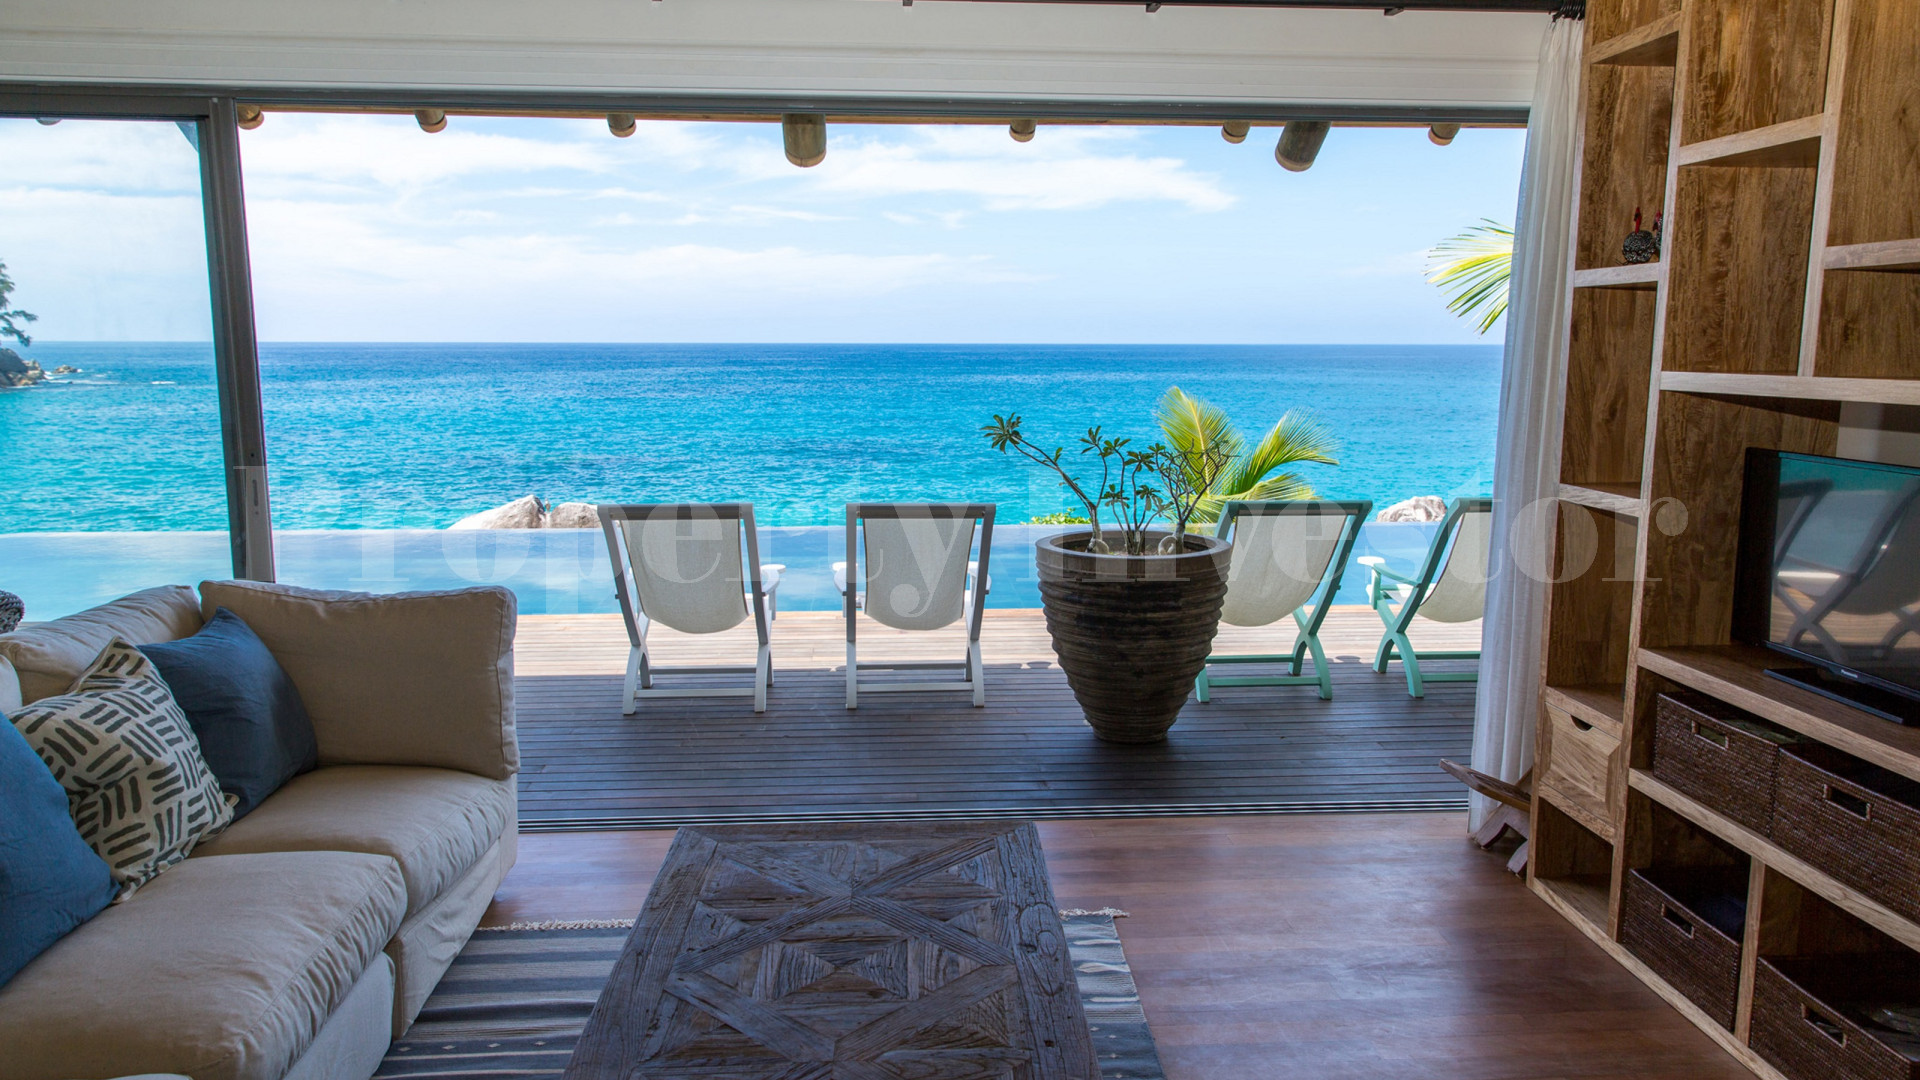 Изумительная роскошная вилла с 3 спальнями на берегу моря в эксклюзивном месте на севере о.Маэ, Сейшелы